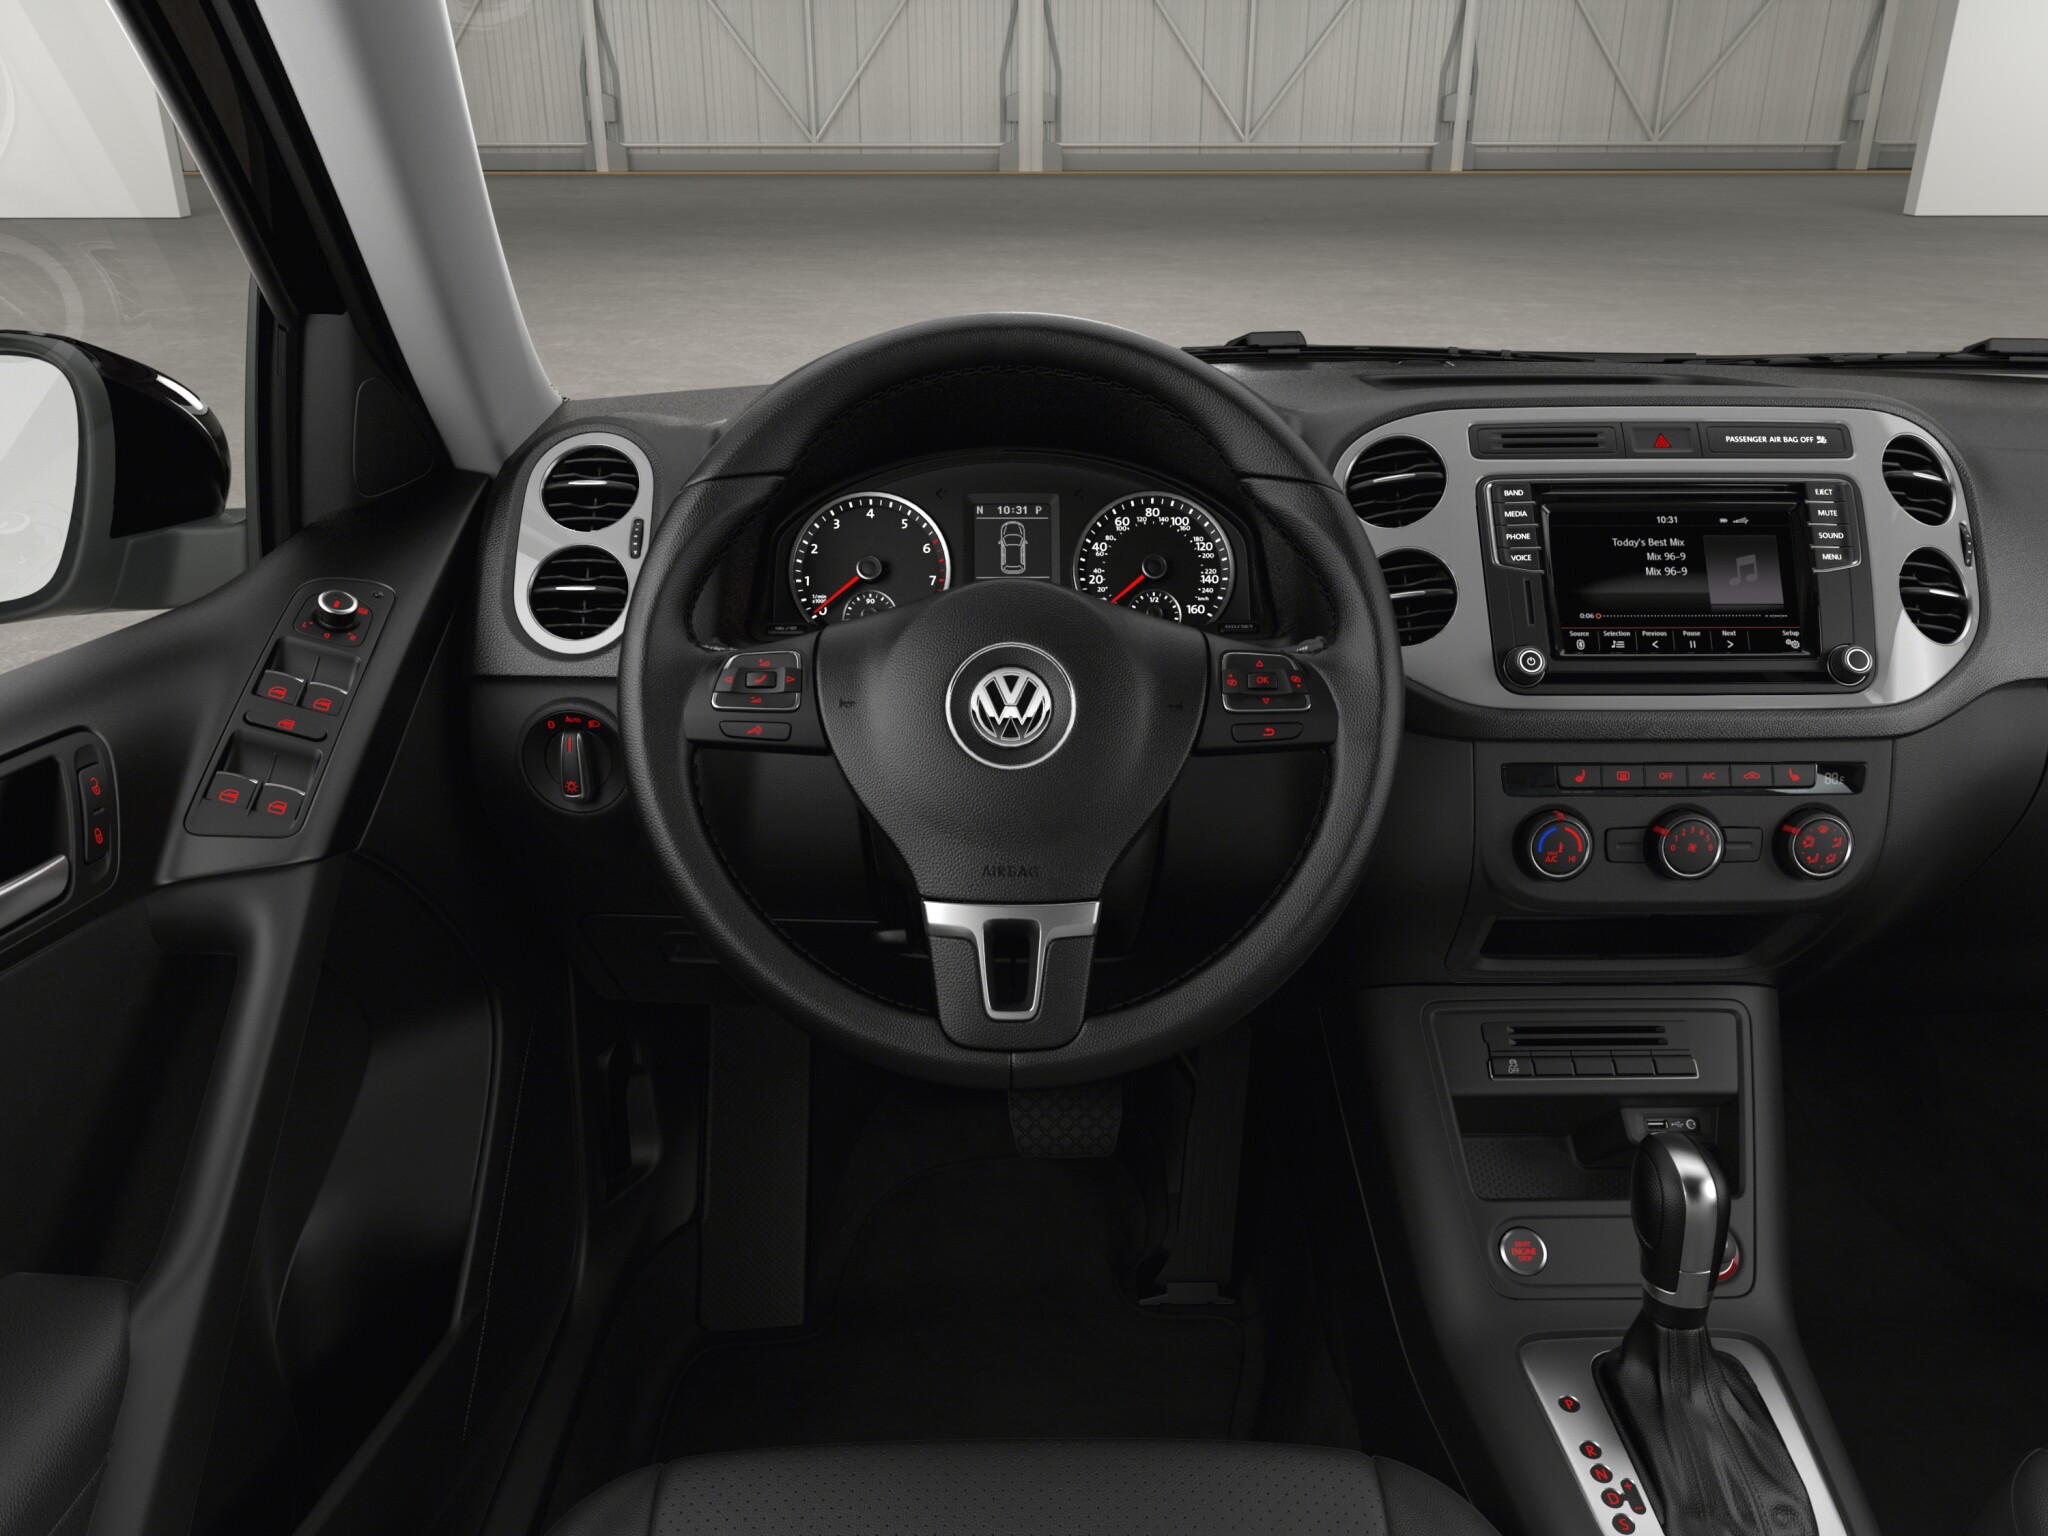 Volkswagen Tiguan Comfortline Diesel interior front Dashboard view